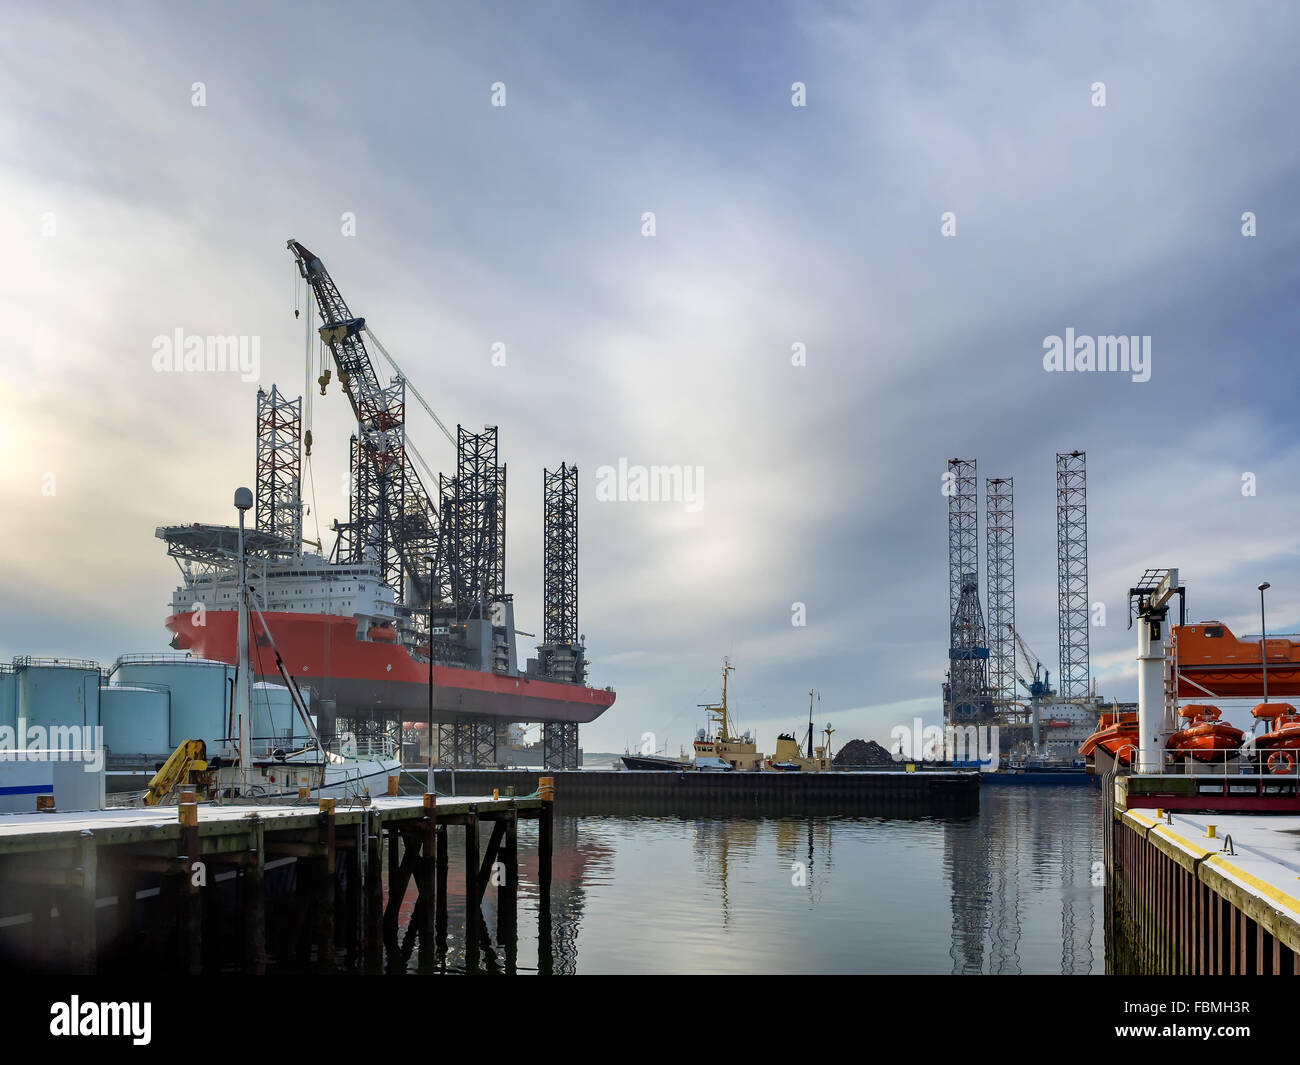 Cric l'age avec six pattes à Esbjerg, Danemark port pétrolier Banque D'Images